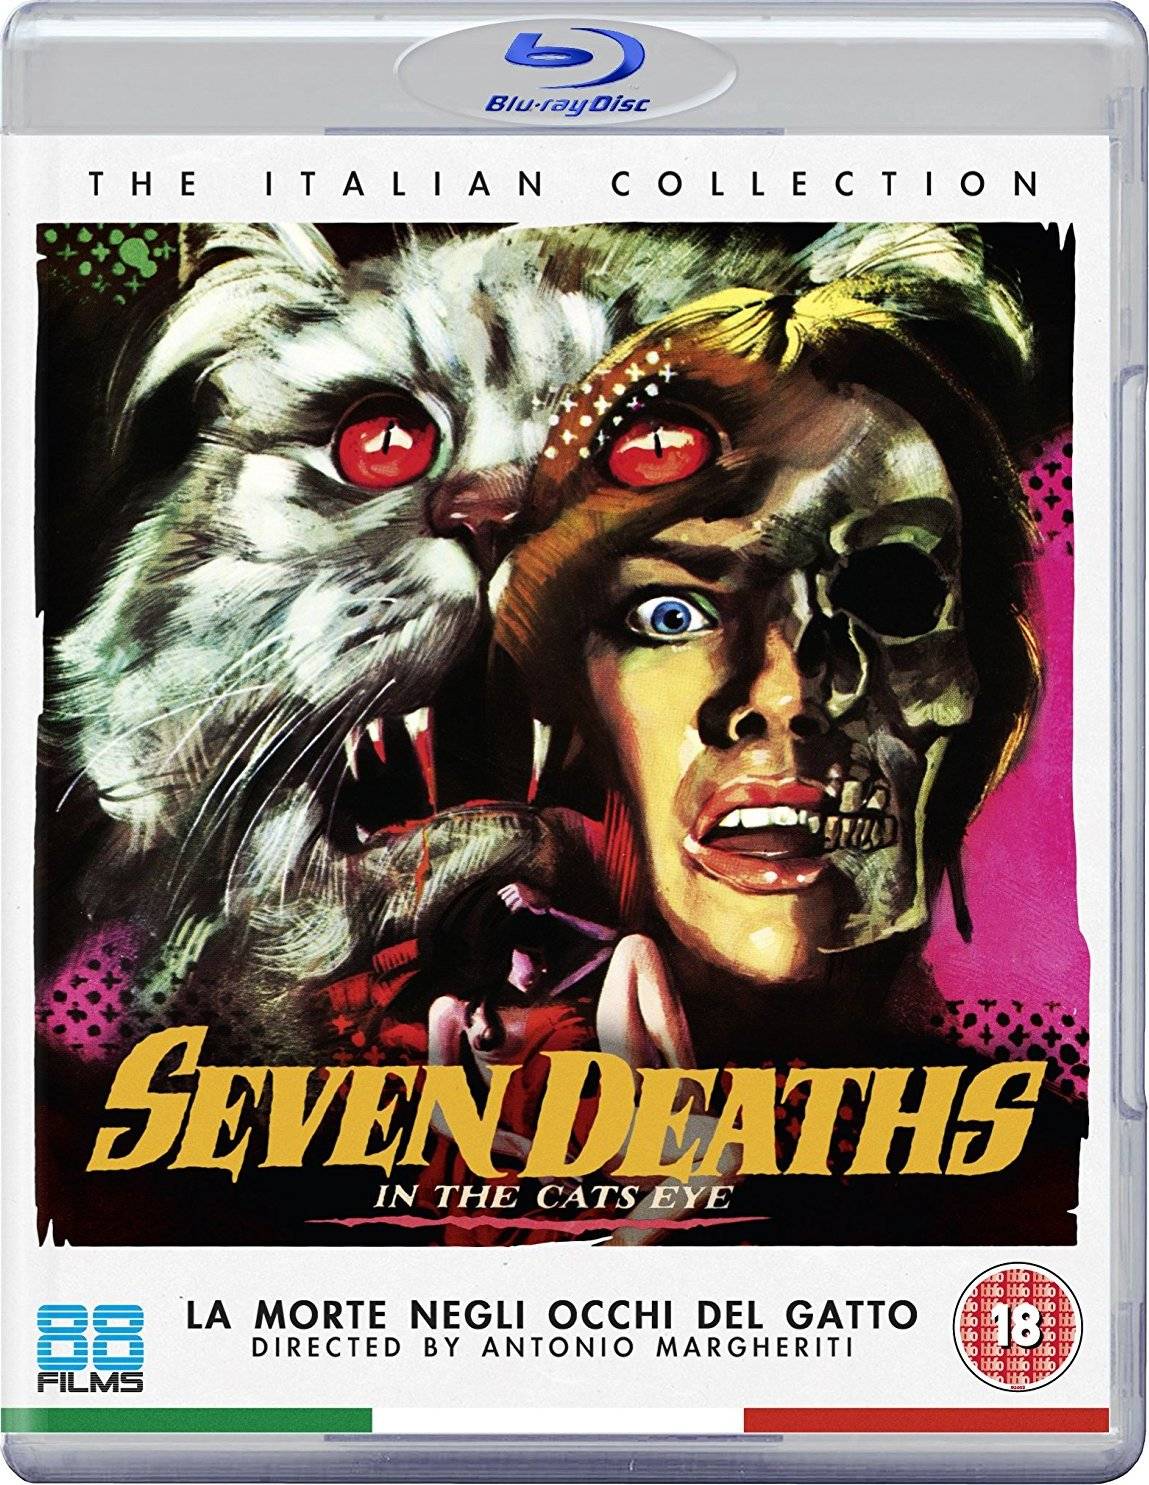 Seven Deaths in the Cats Eyes (1973) La morte negli occhi del gatto